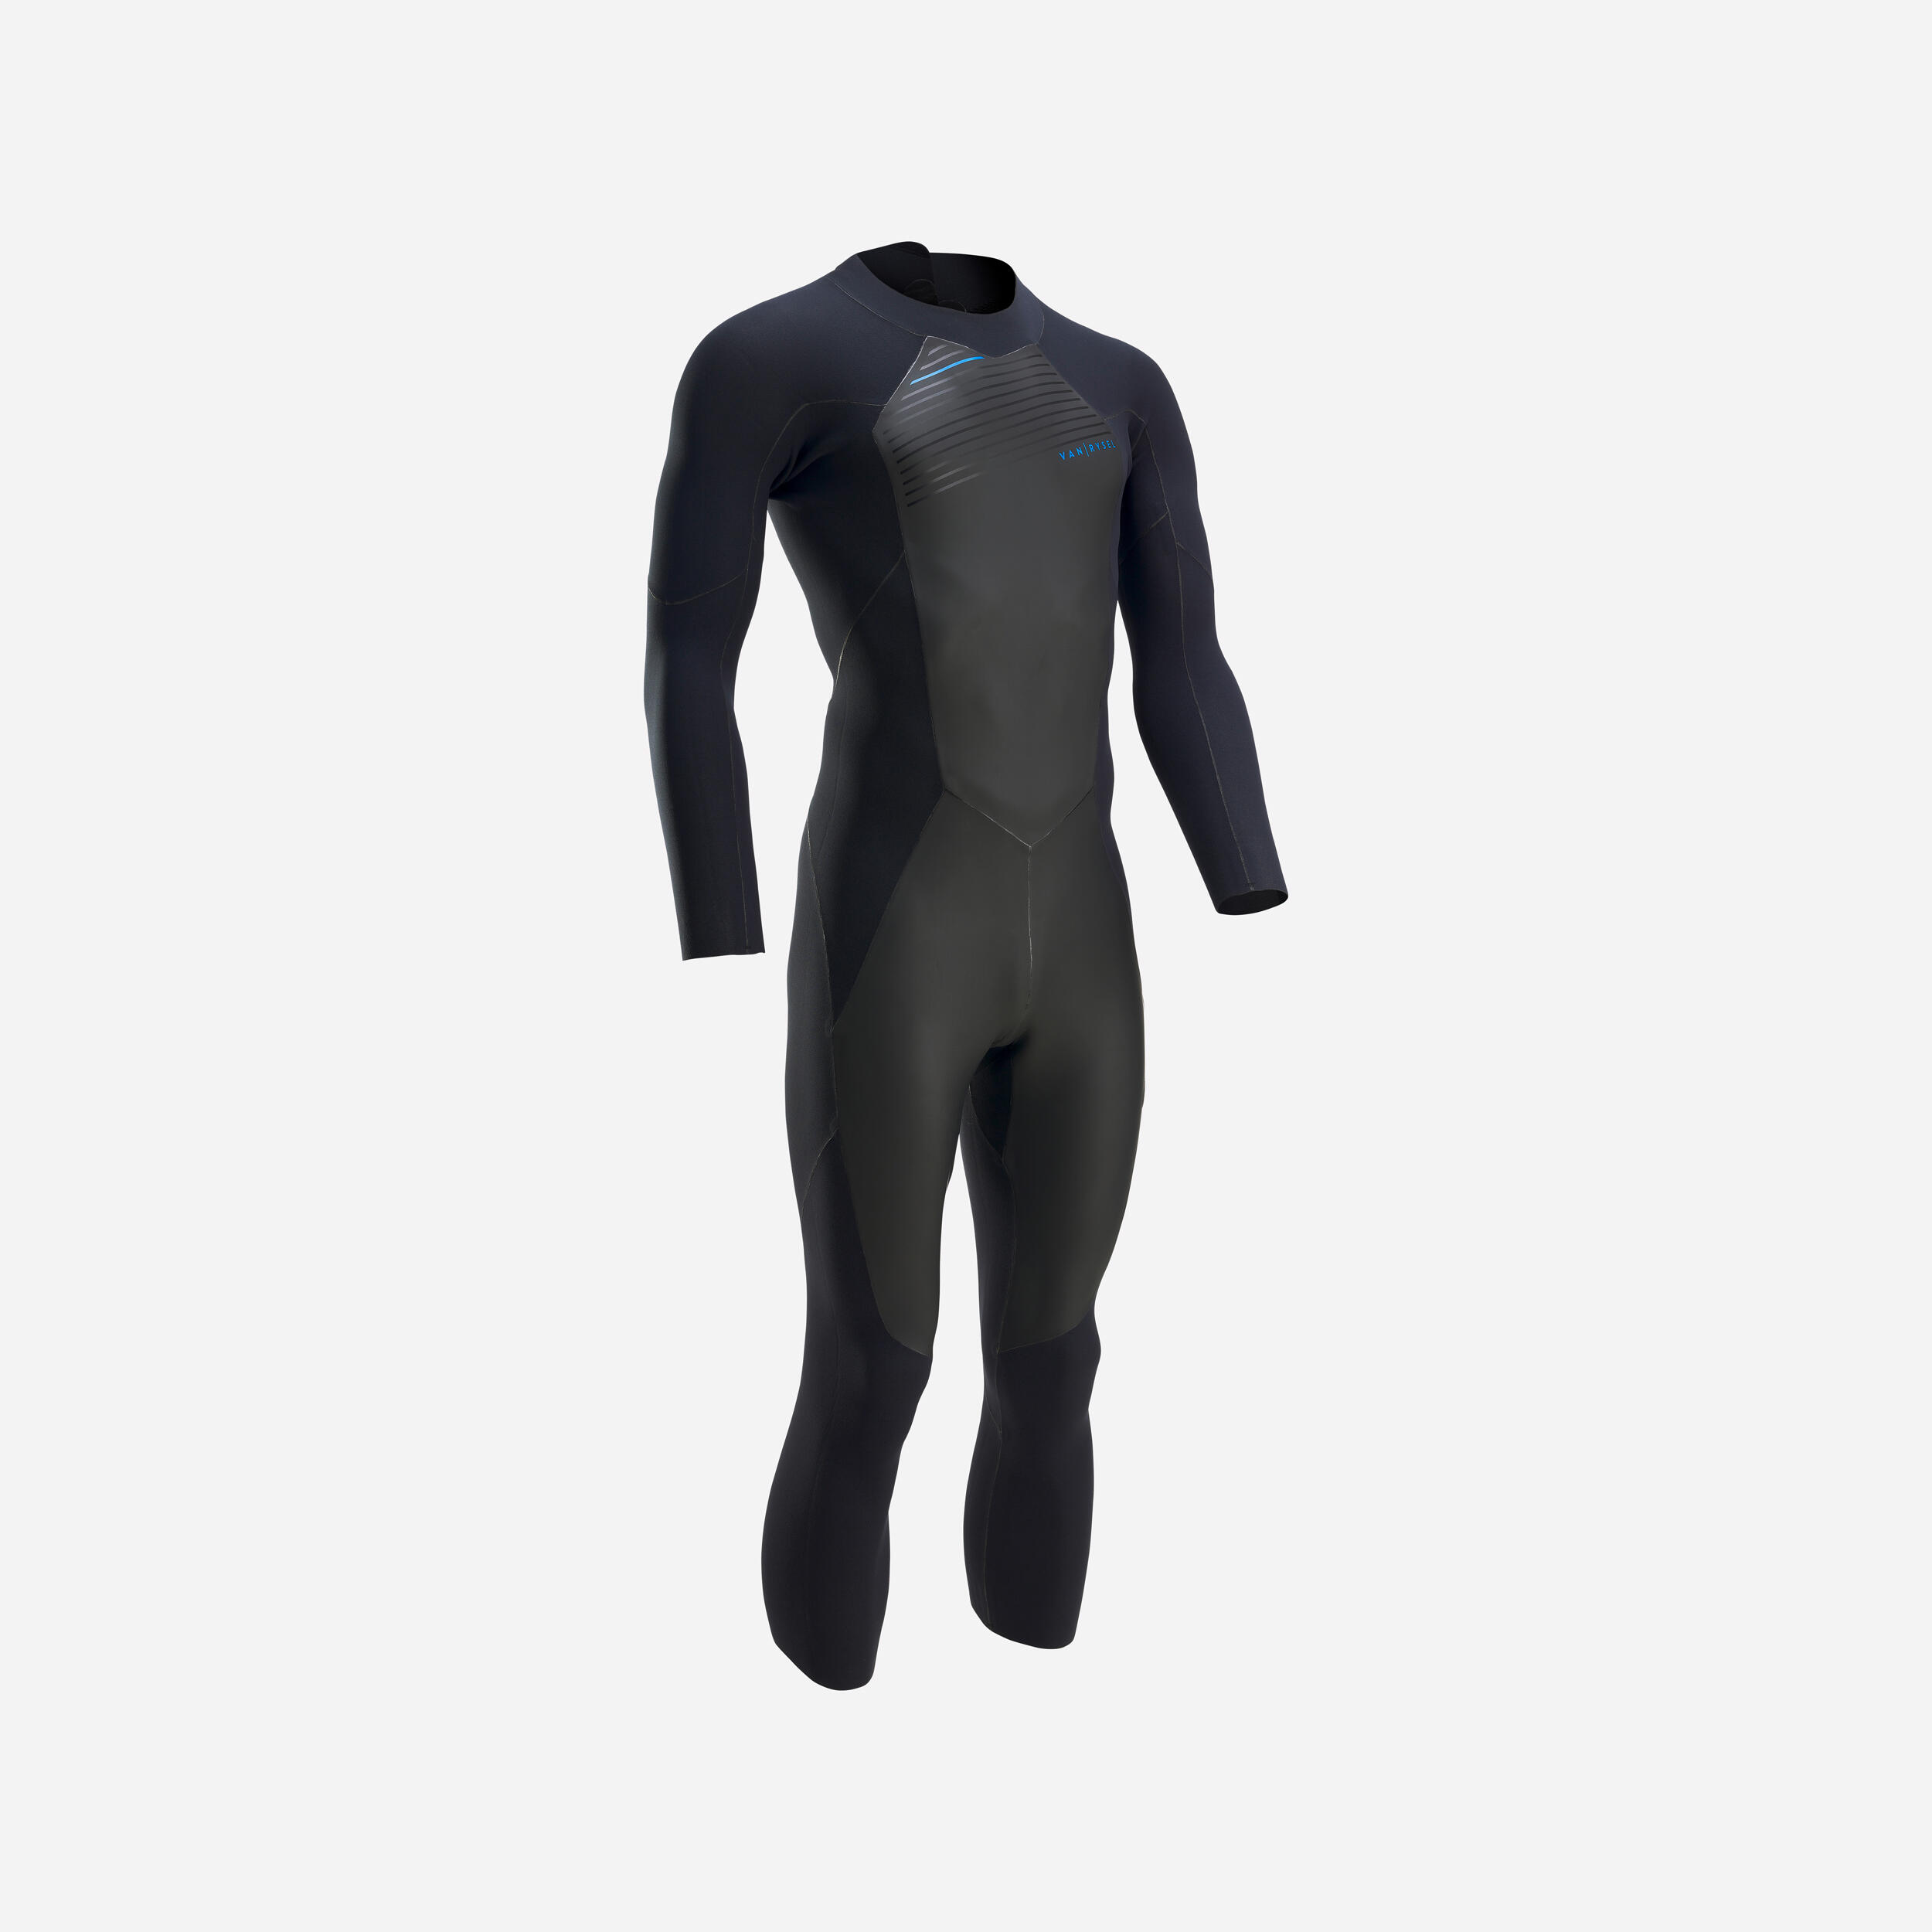 Triathlon neoprene suit - Men - black, Whale grey - Van rysel - Decathlon